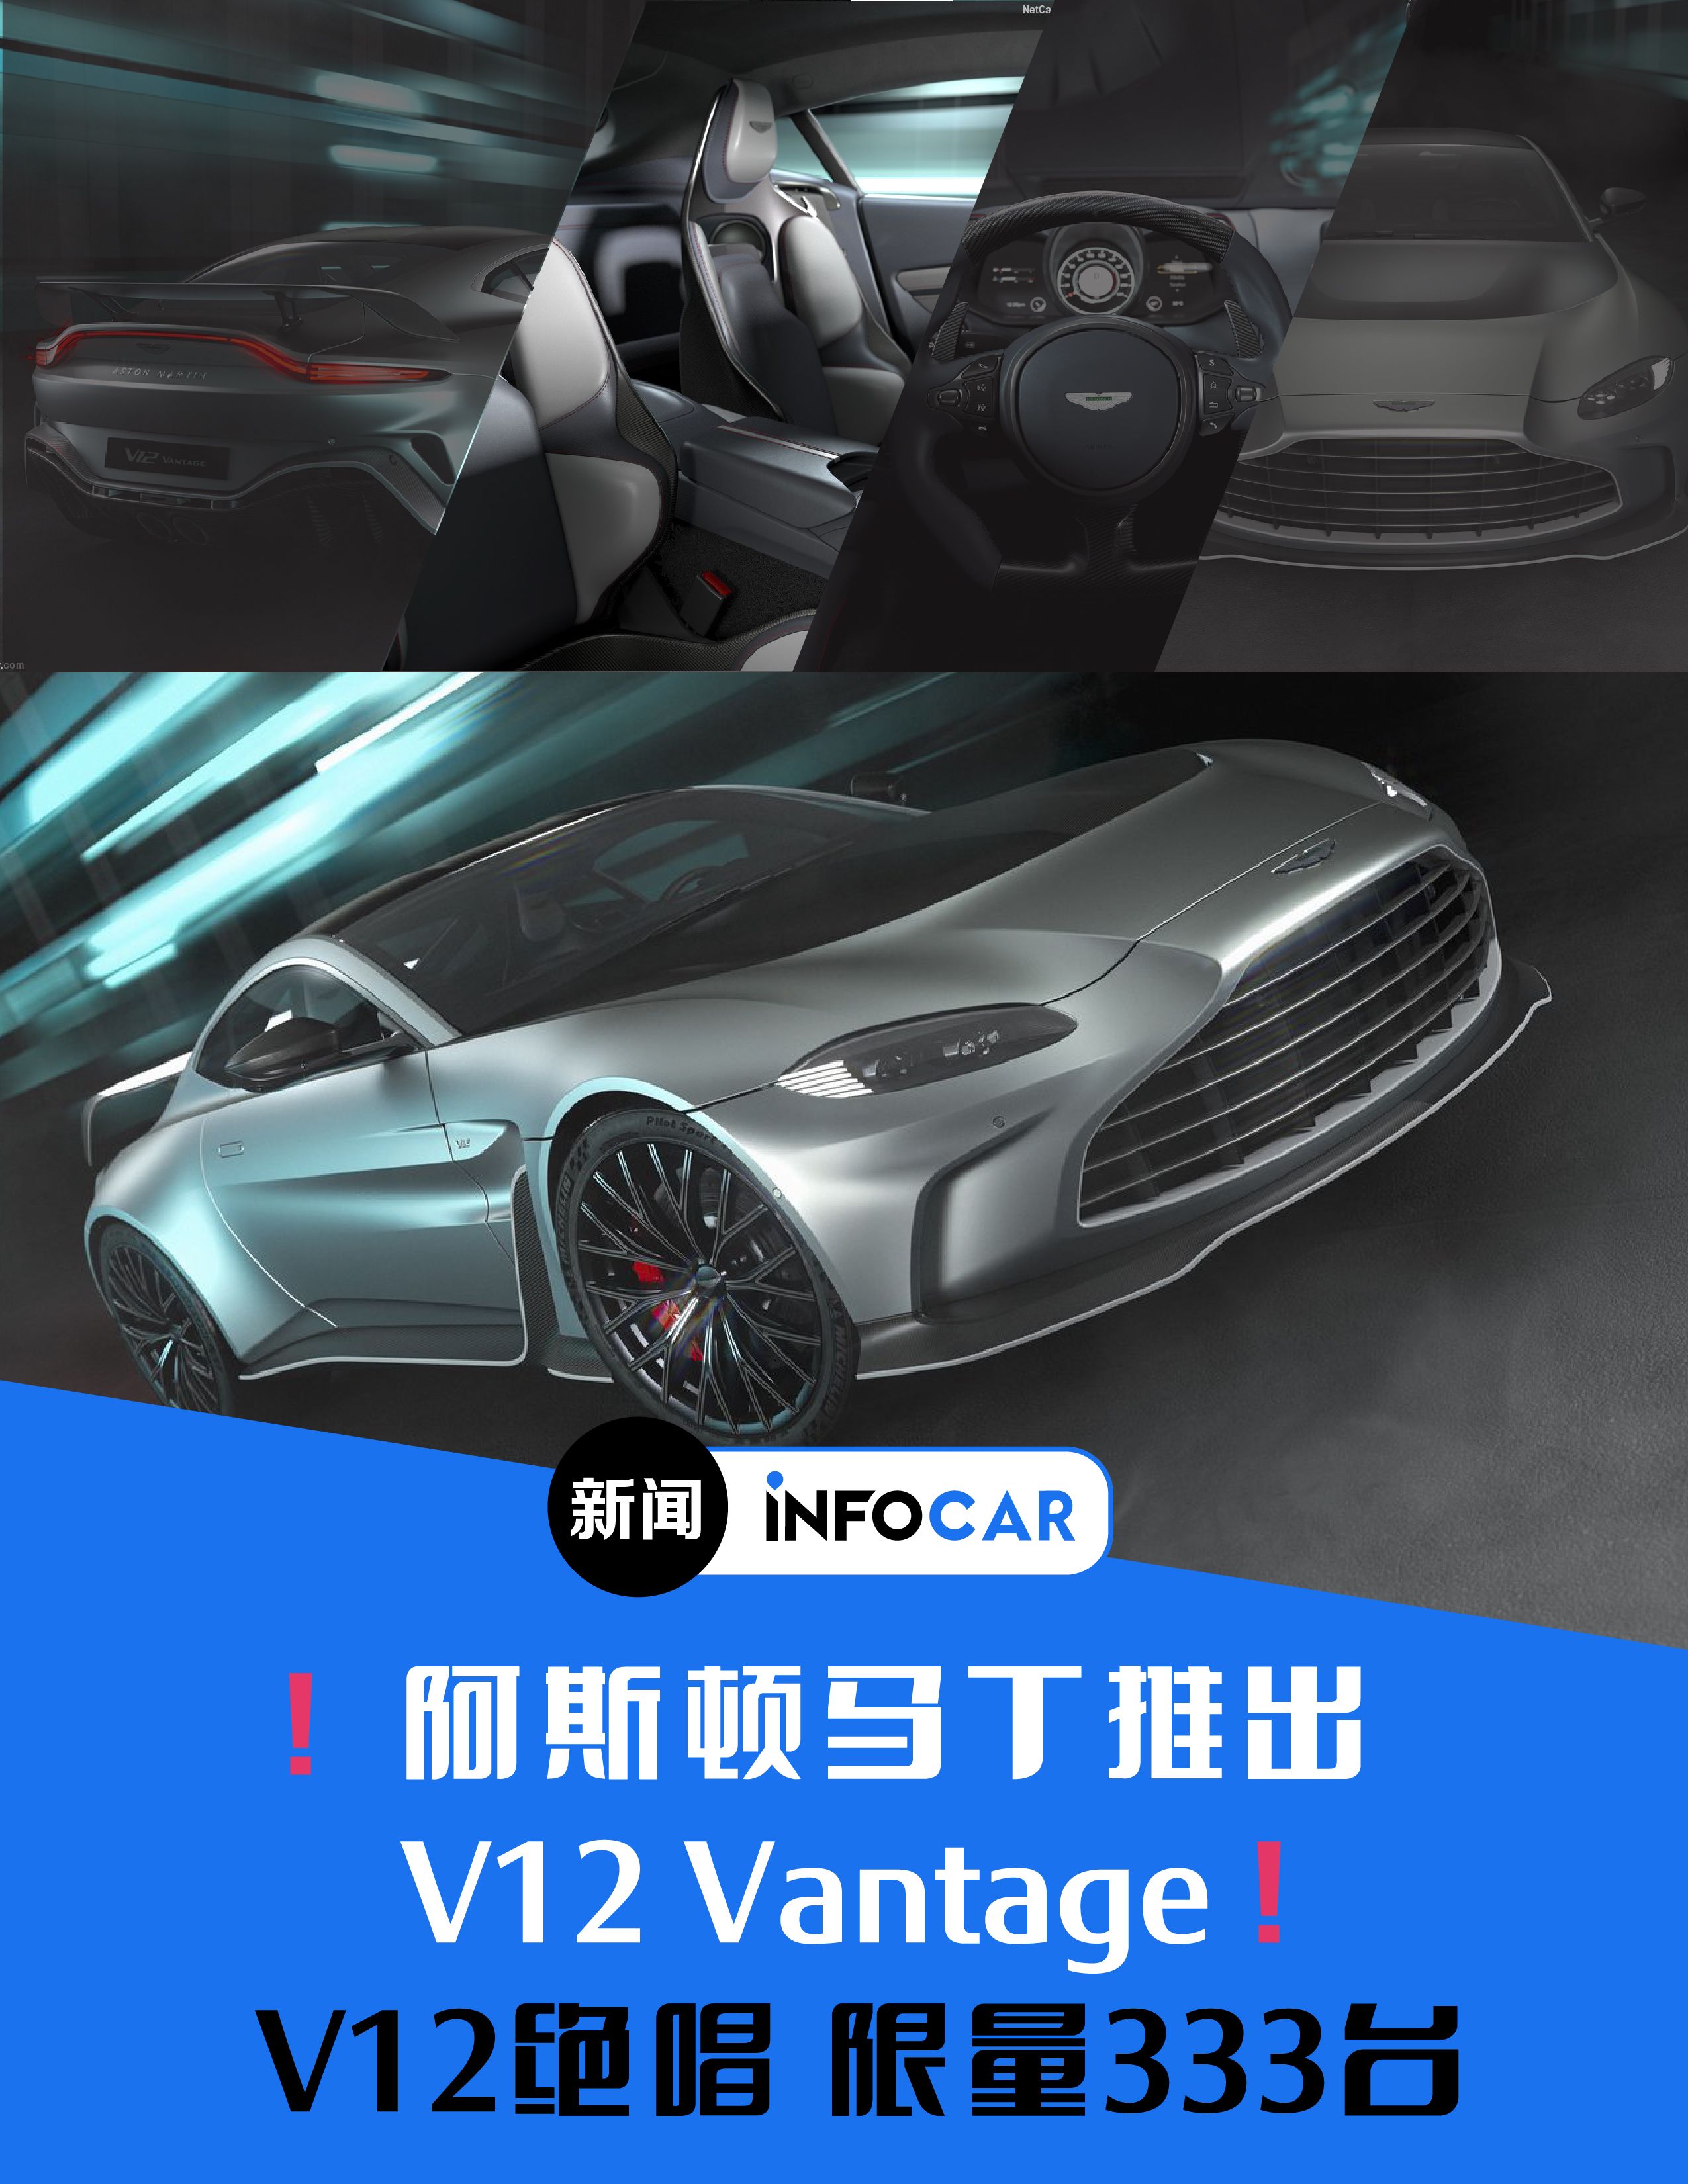 Infocar -INFOCAR车闻：阿斯顿马丁推出V12 Vantage！限量333台，已全部售罄！